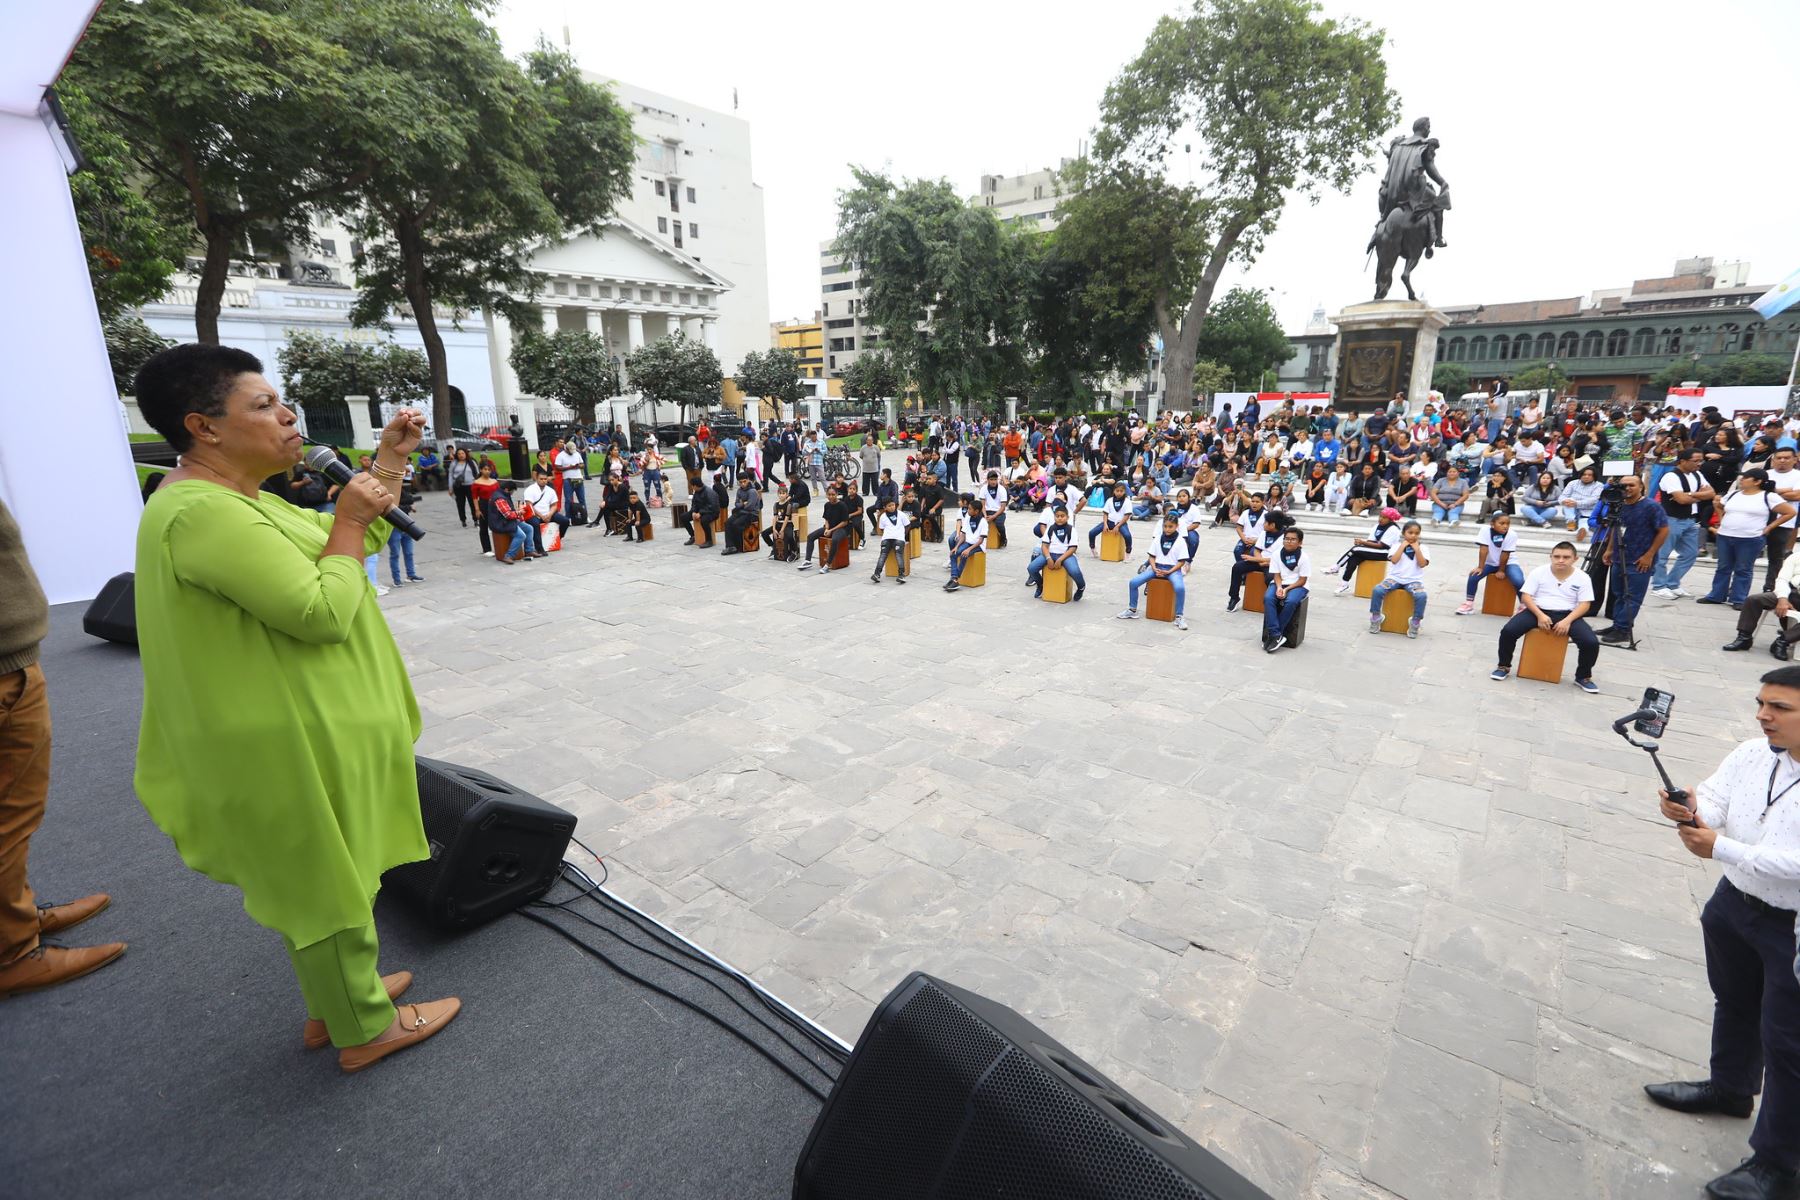 Primera vicepresidenta del Congreso de la República,  Martha Moyano Delgado participa del pasacalle y celebración por el día de la cultura afroperuana.
Fotos: Congreso de la República